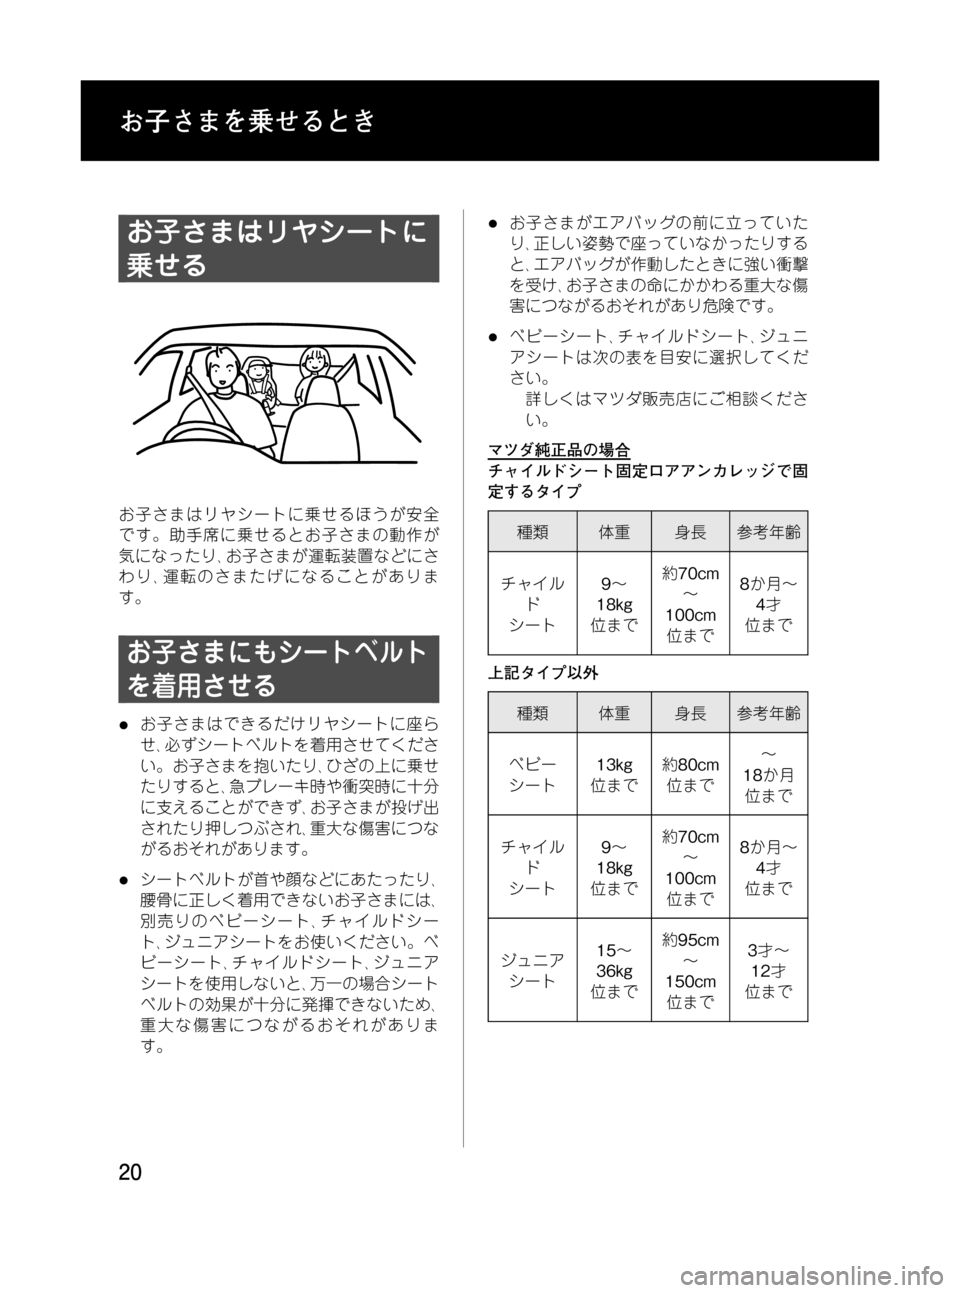 MAZDA MODEL RX 8 2008  取扱説明書 (in Japanese) Black plate (20,1)
お子さまはリヤシートに
乗せる
お子さまはリヤシートに乗せるほうが安全
です。助手席に乗せるとお子さまの動作が
気になったり､